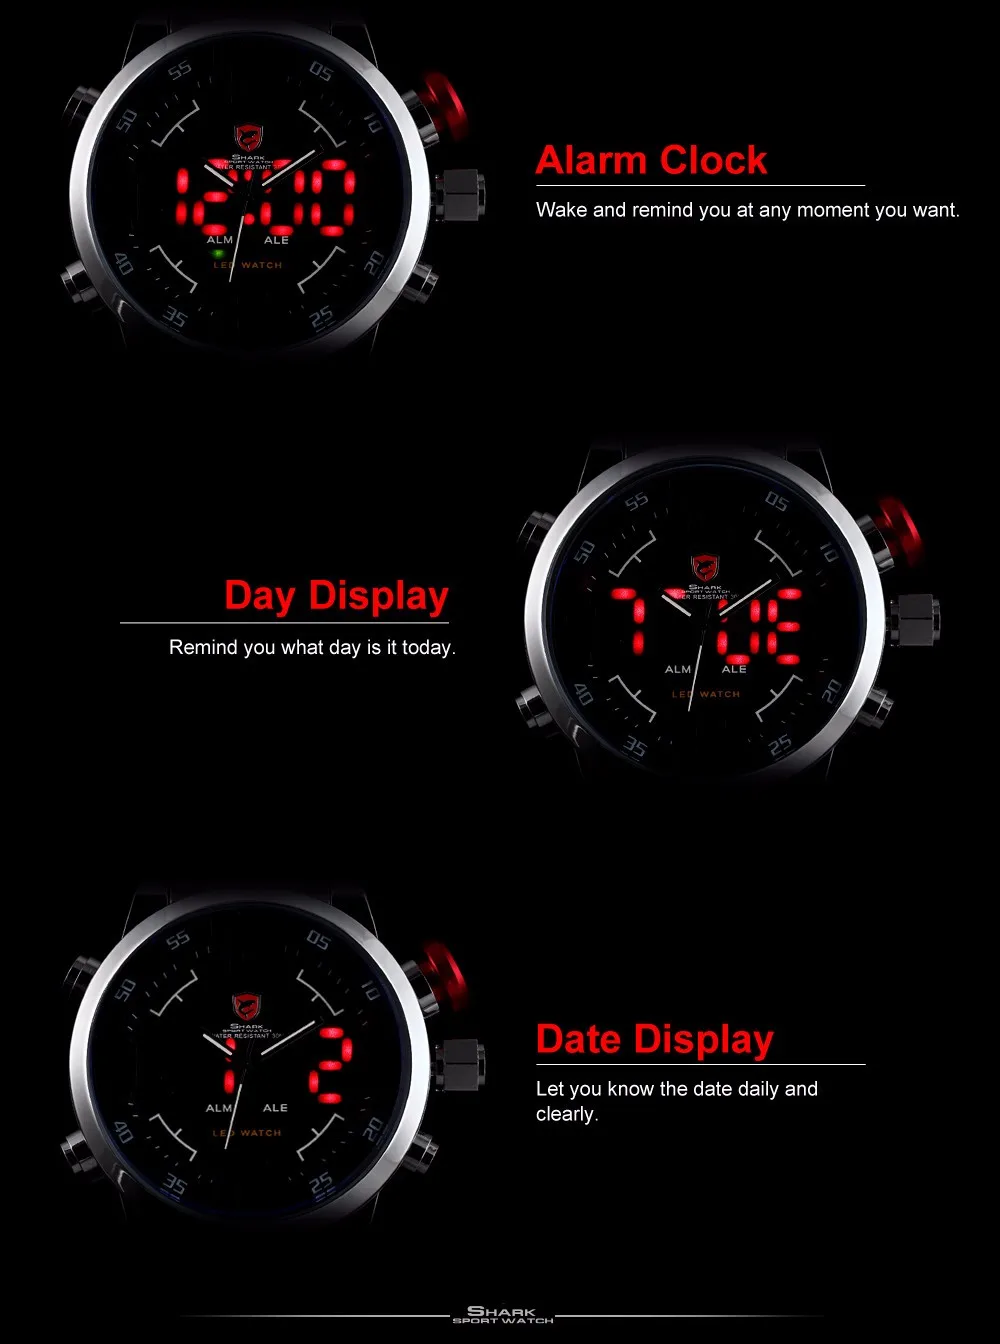 Брендовые мужские спортивные часы с акулой, брендовые, Роскошные, полностью стальные, цифровые, с календарем, наручные часы, кварцевые, Relogio Masculino